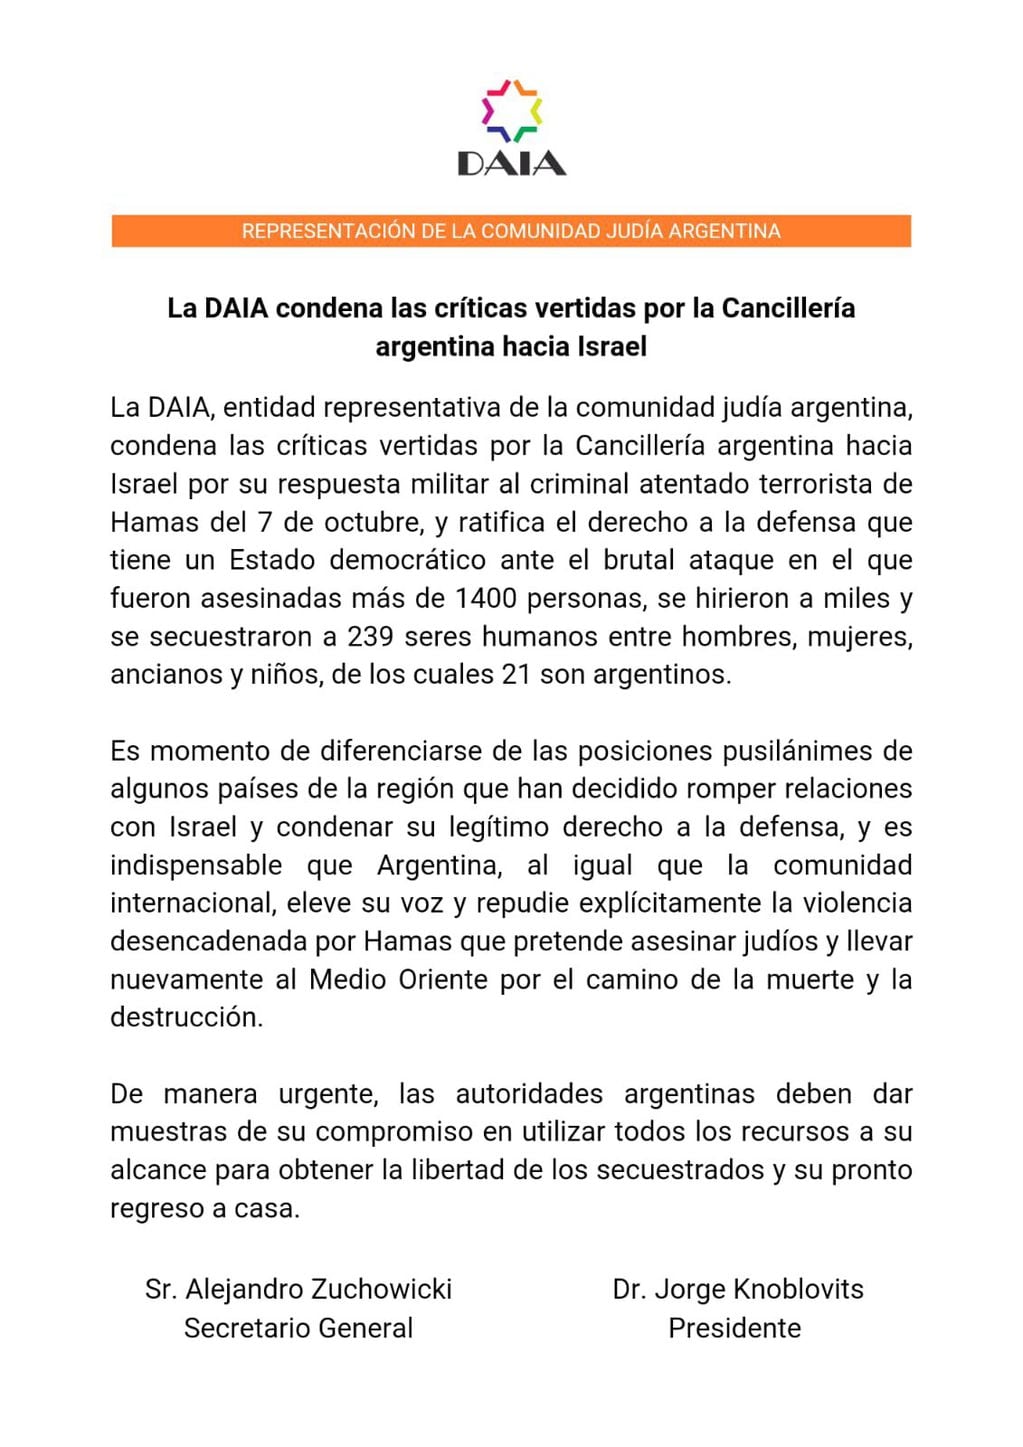 El comunicado de la DAIA - X